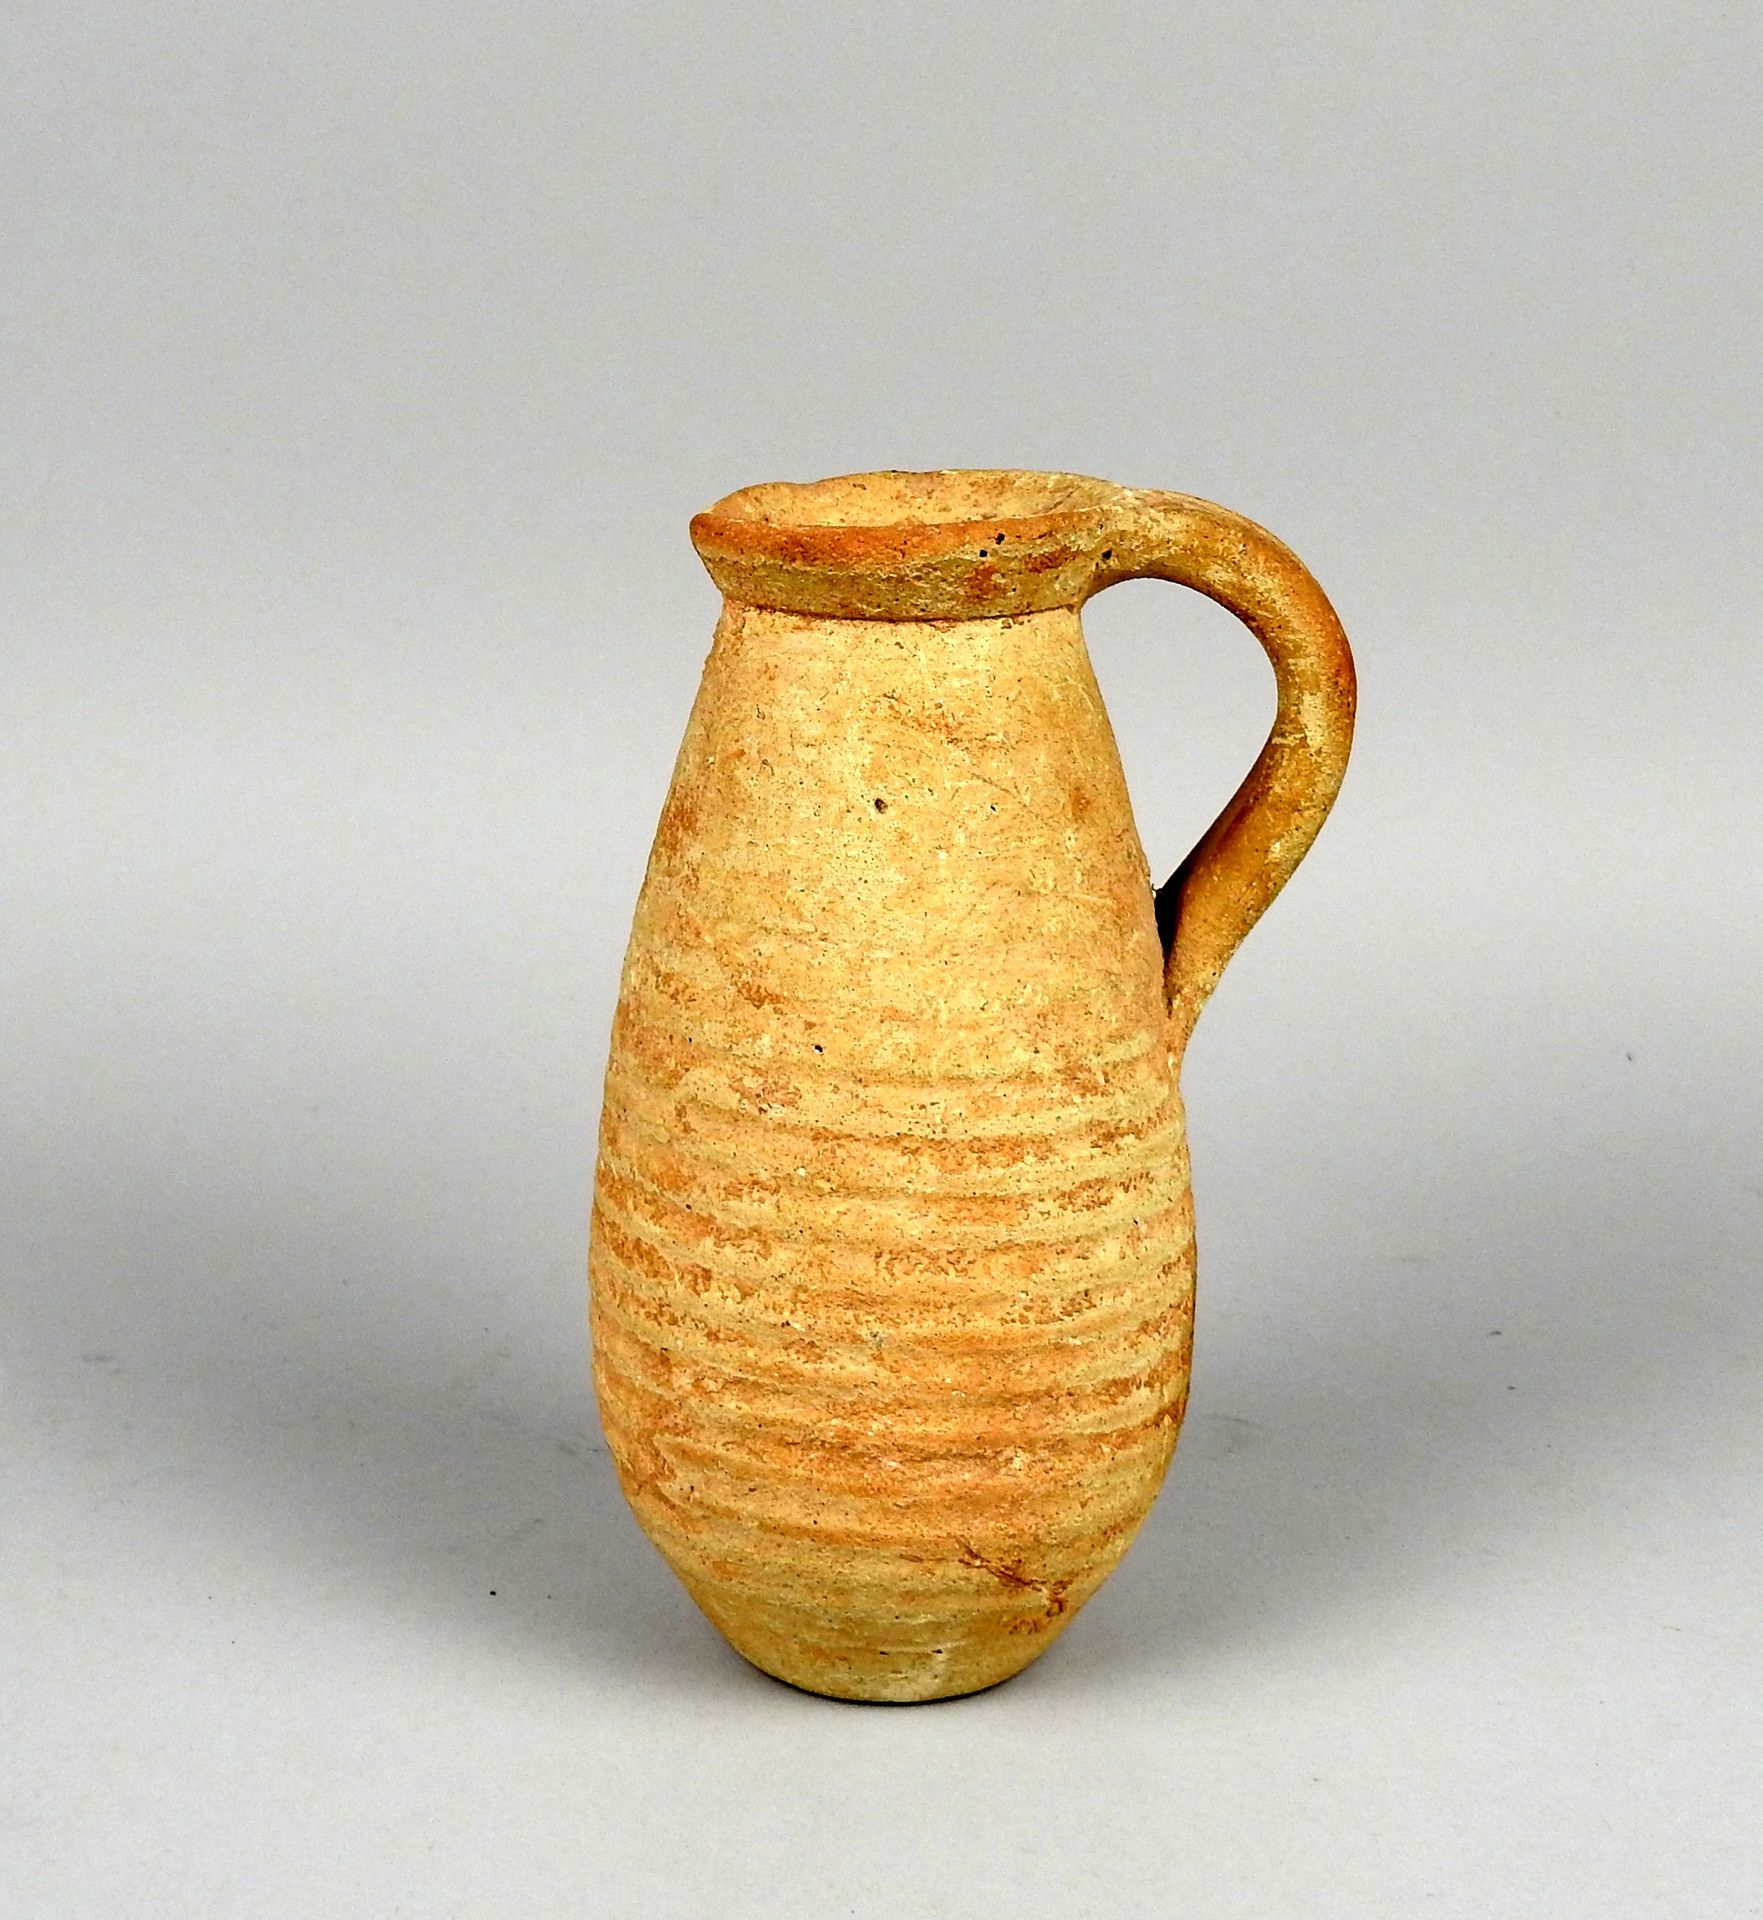 Null 带手柄和线性几何装饰的水壶

赤土16厘米

罗马时期